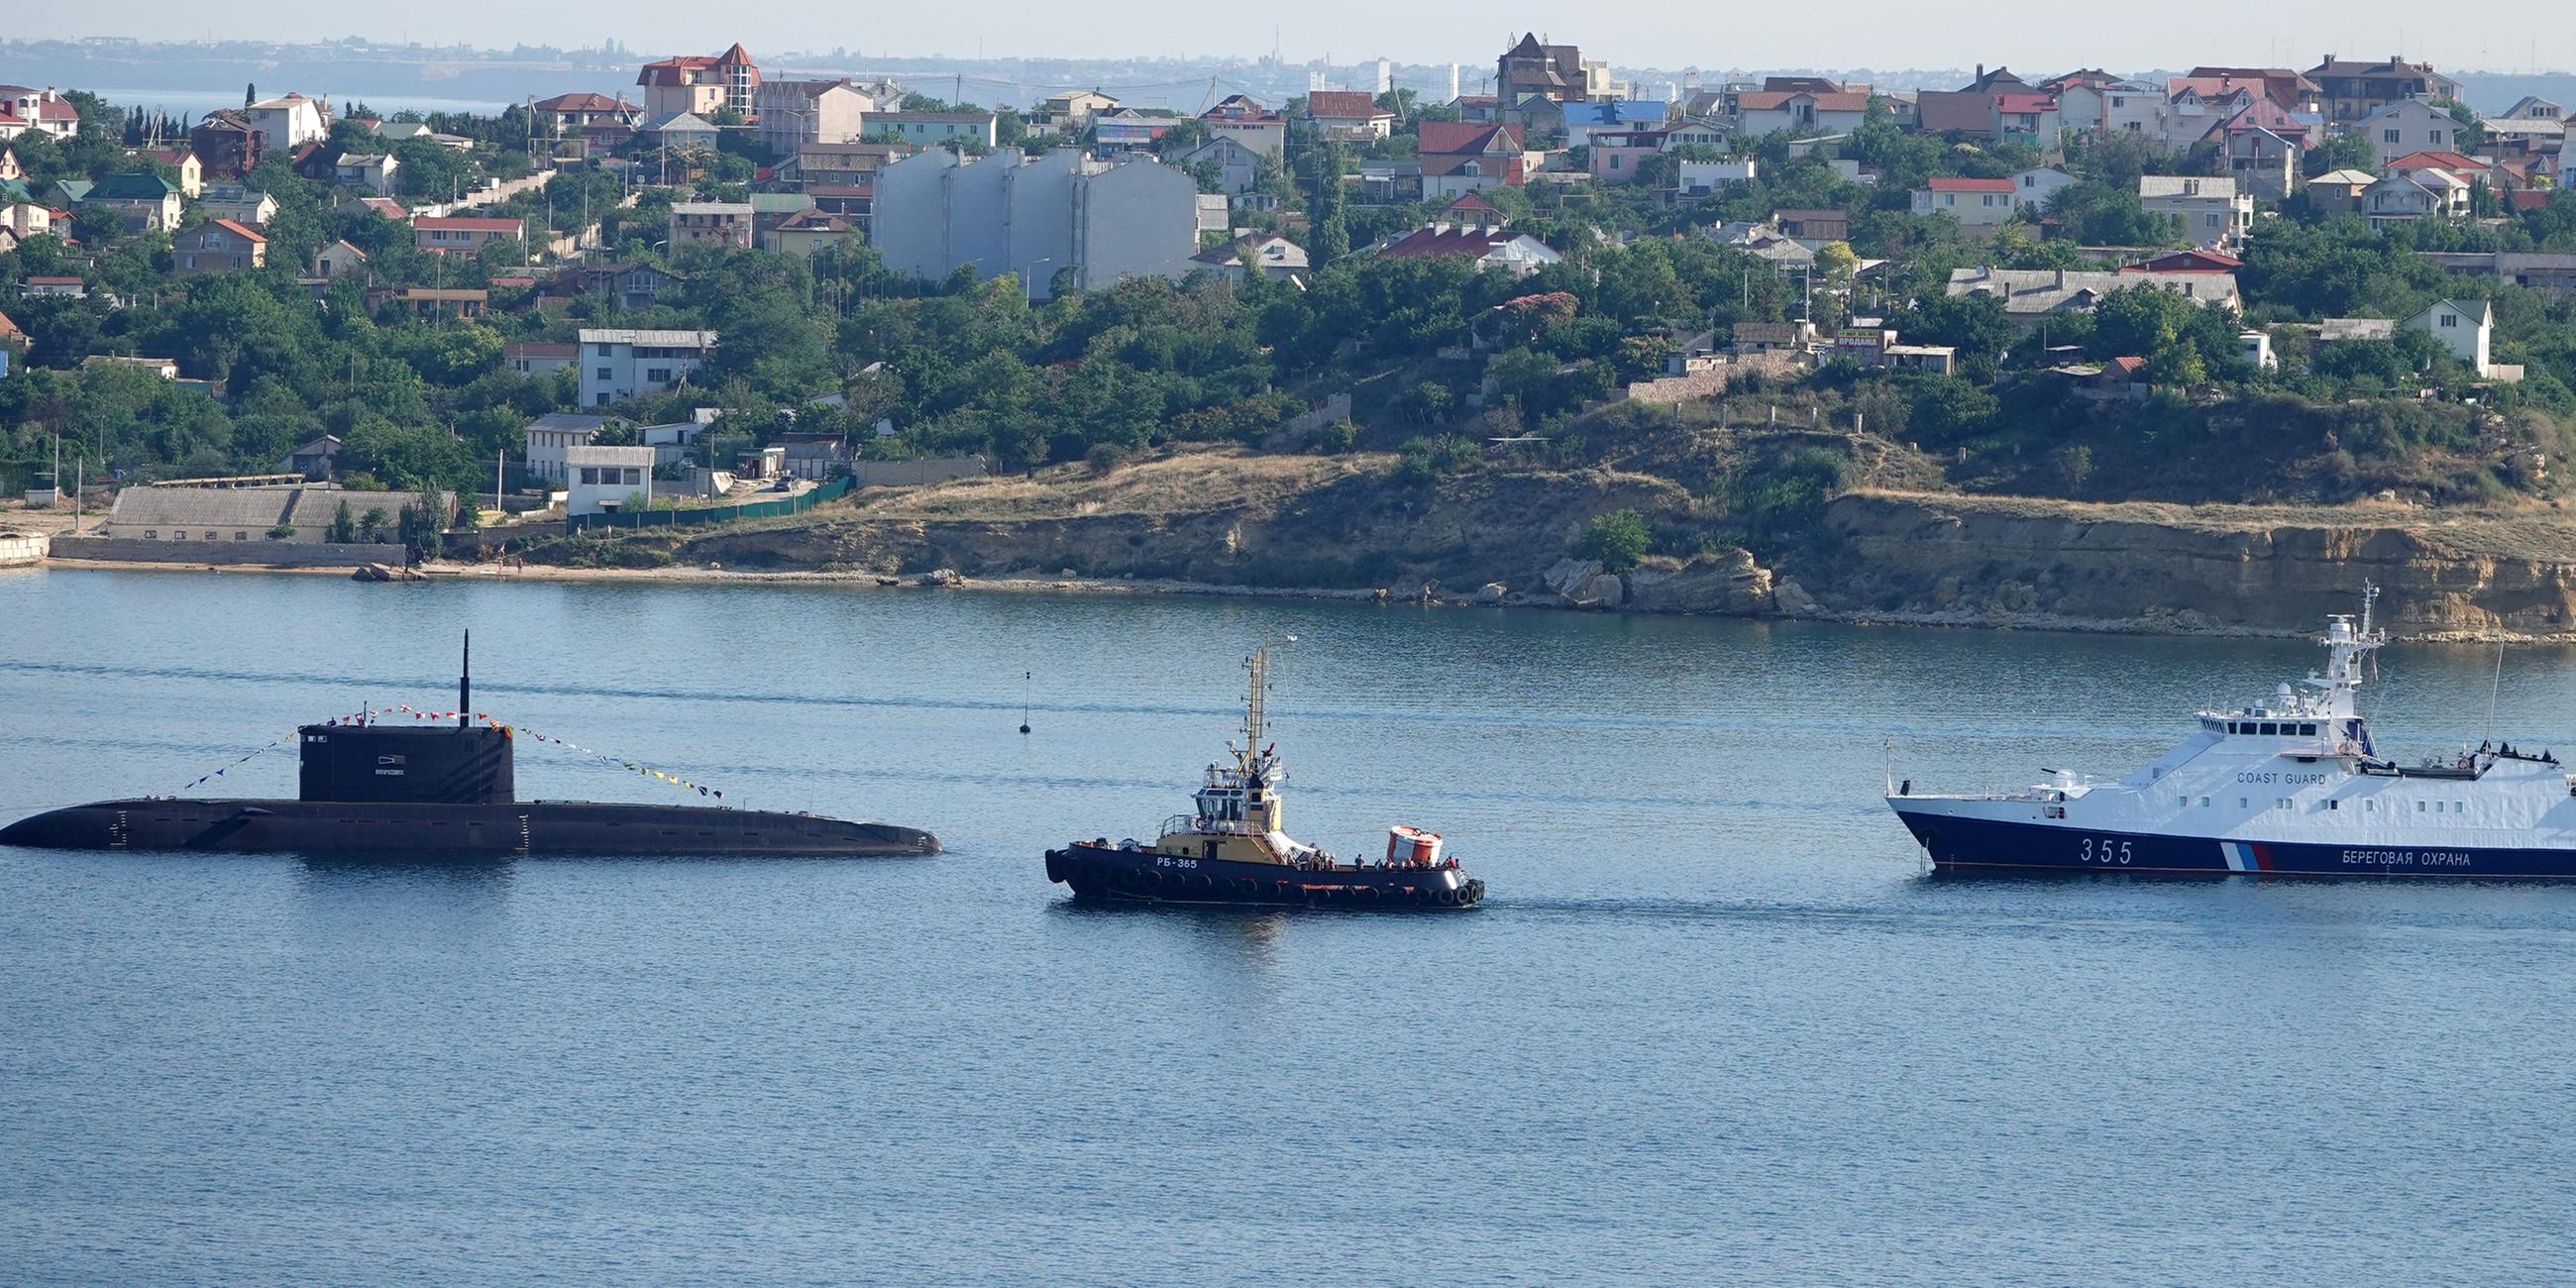 Archiv: Ein U-Boot und Kriegsschiffe der russischen Schwarzmeerflotte liegen vor Anker in der Hafenstadt die ein Symbol der Verteidigung der Krim als uneinnehmbarer Festung ist.